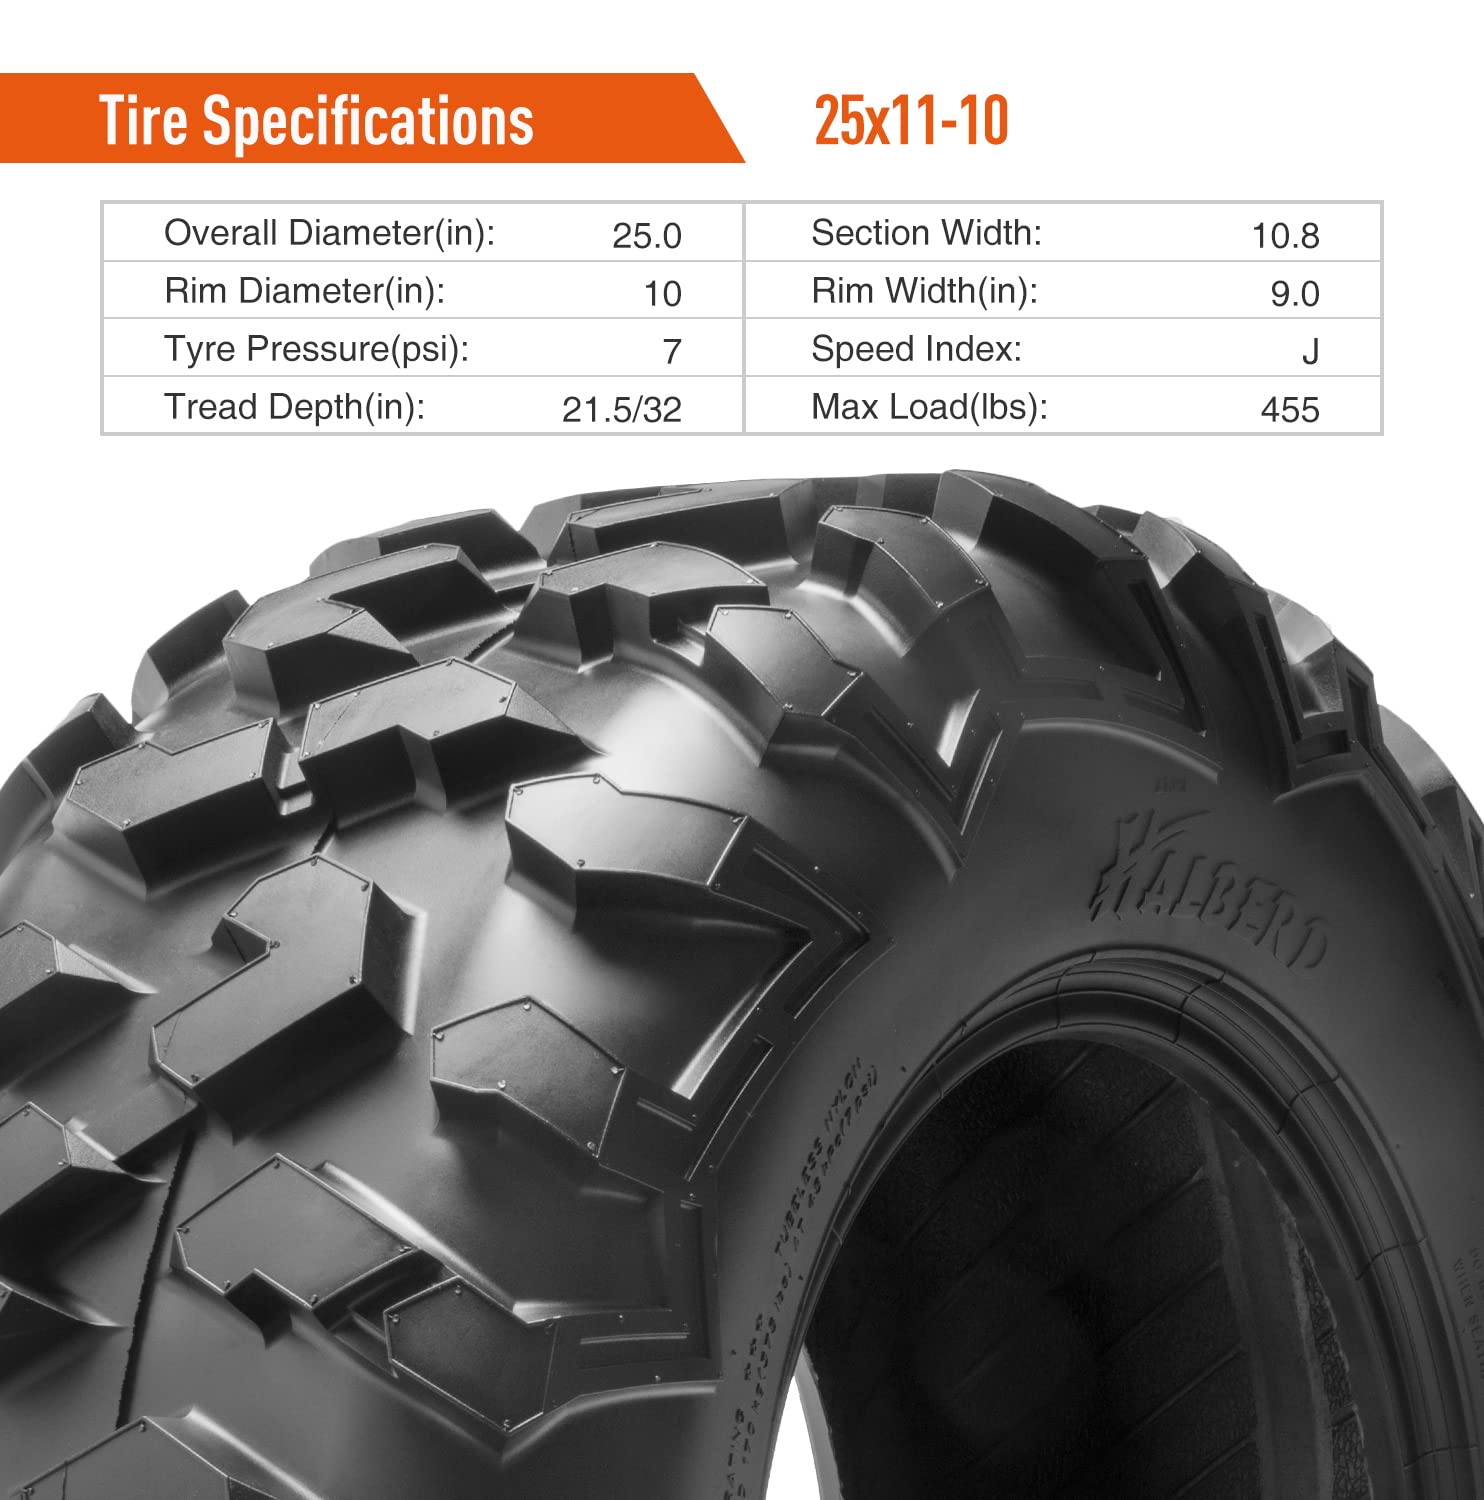 Halberd HU01 25x11-10 ATV Tires Set of 2